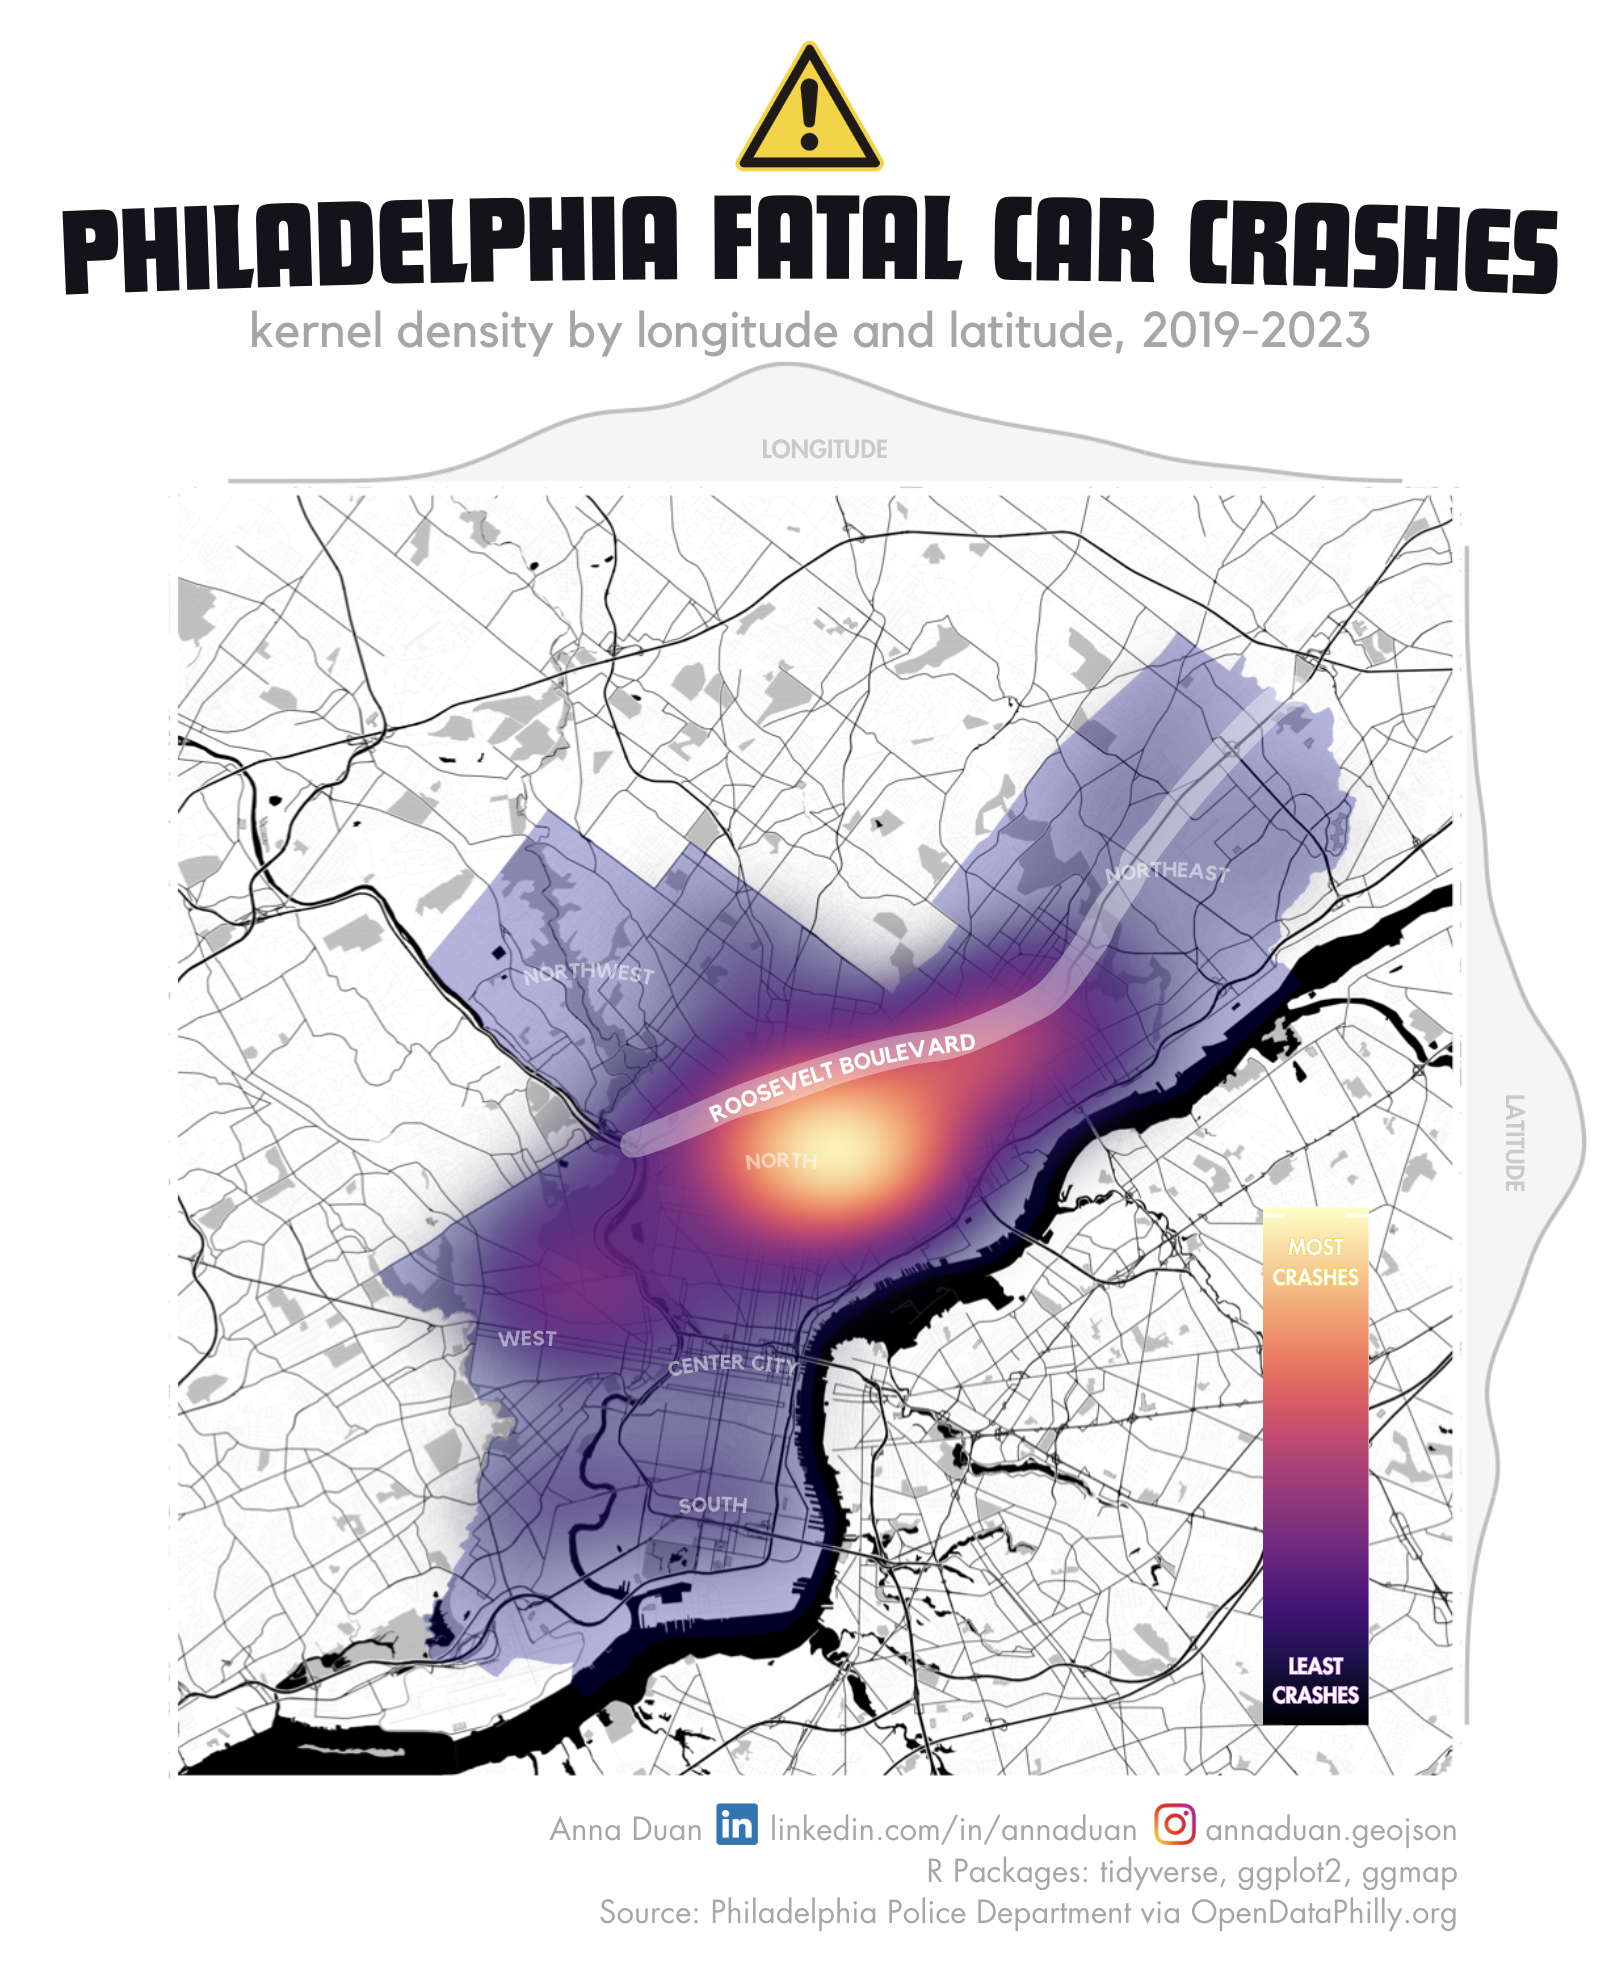 Philadelphia Fatal Car Crashes by Anna Duan